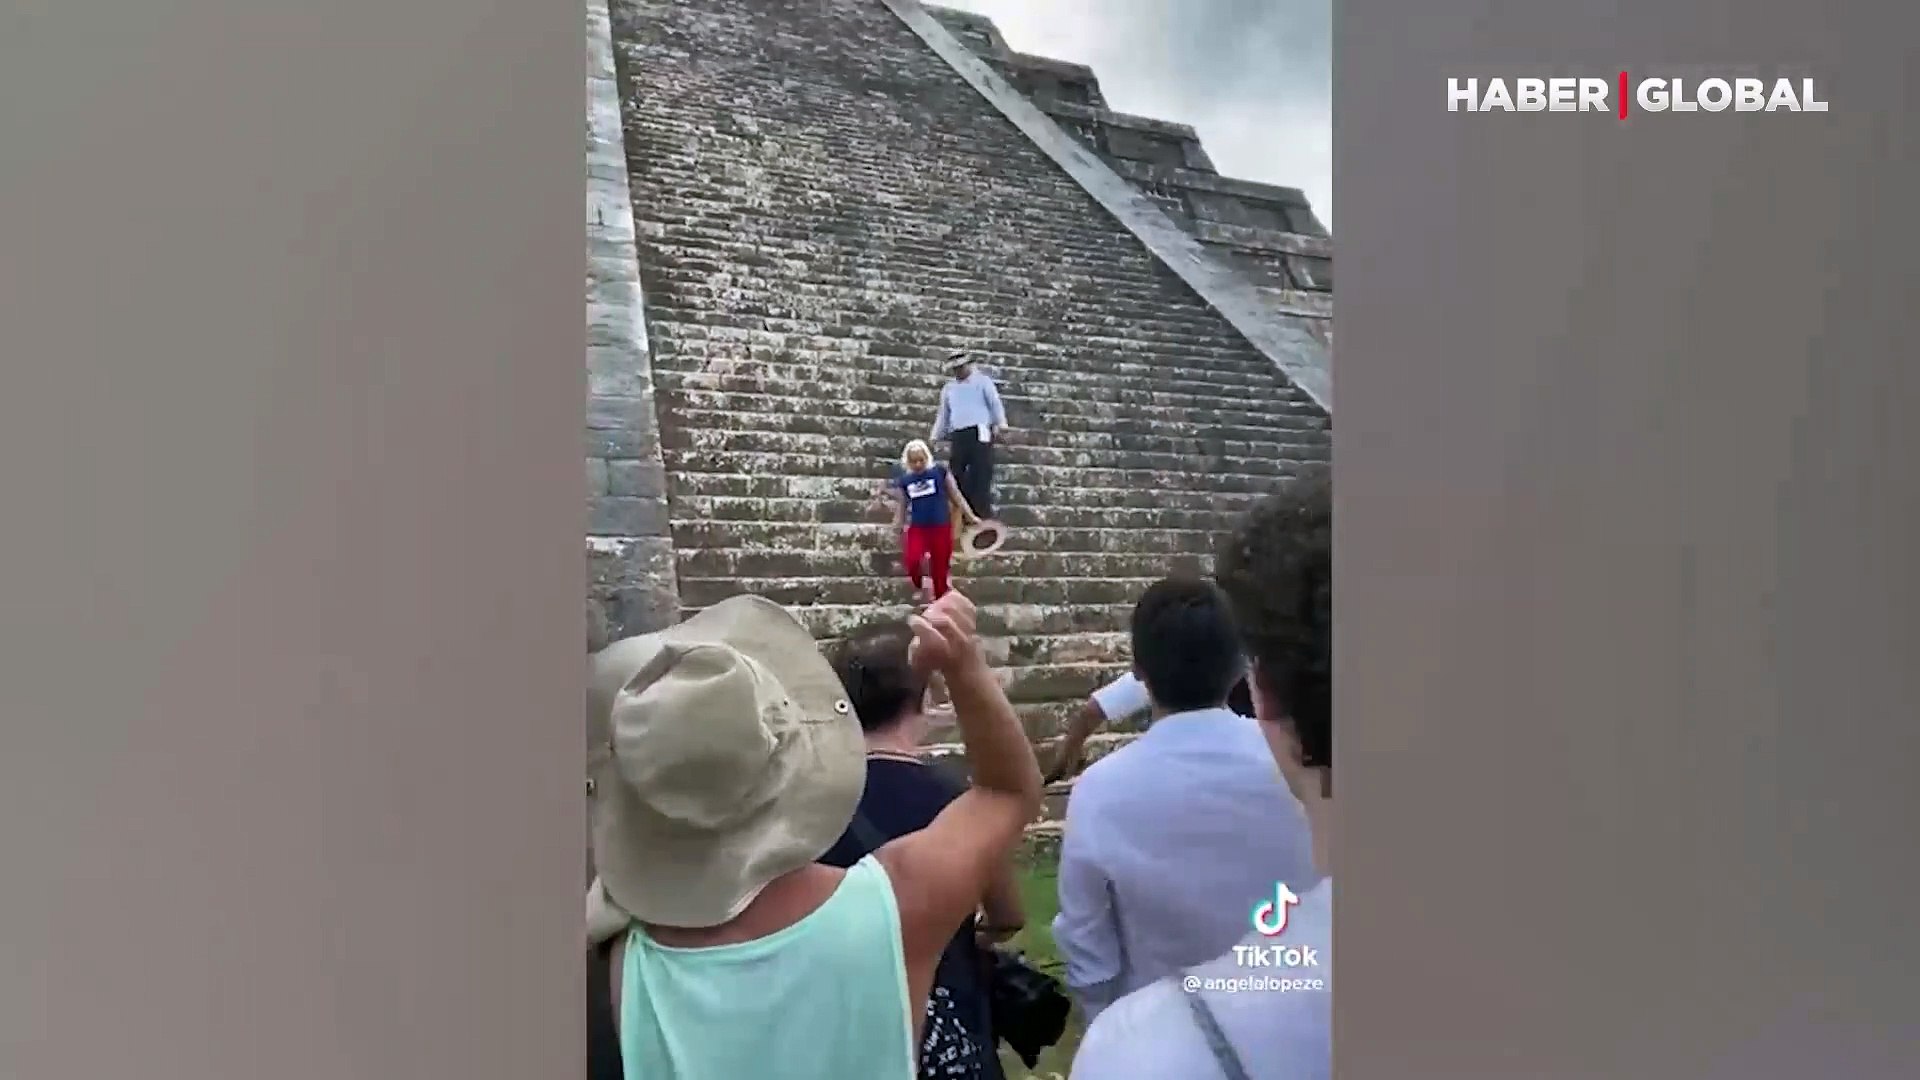 Maya uygarlığına ait tarihi piramide çıkan kadına linç girişimi! -  Dailymotion Video